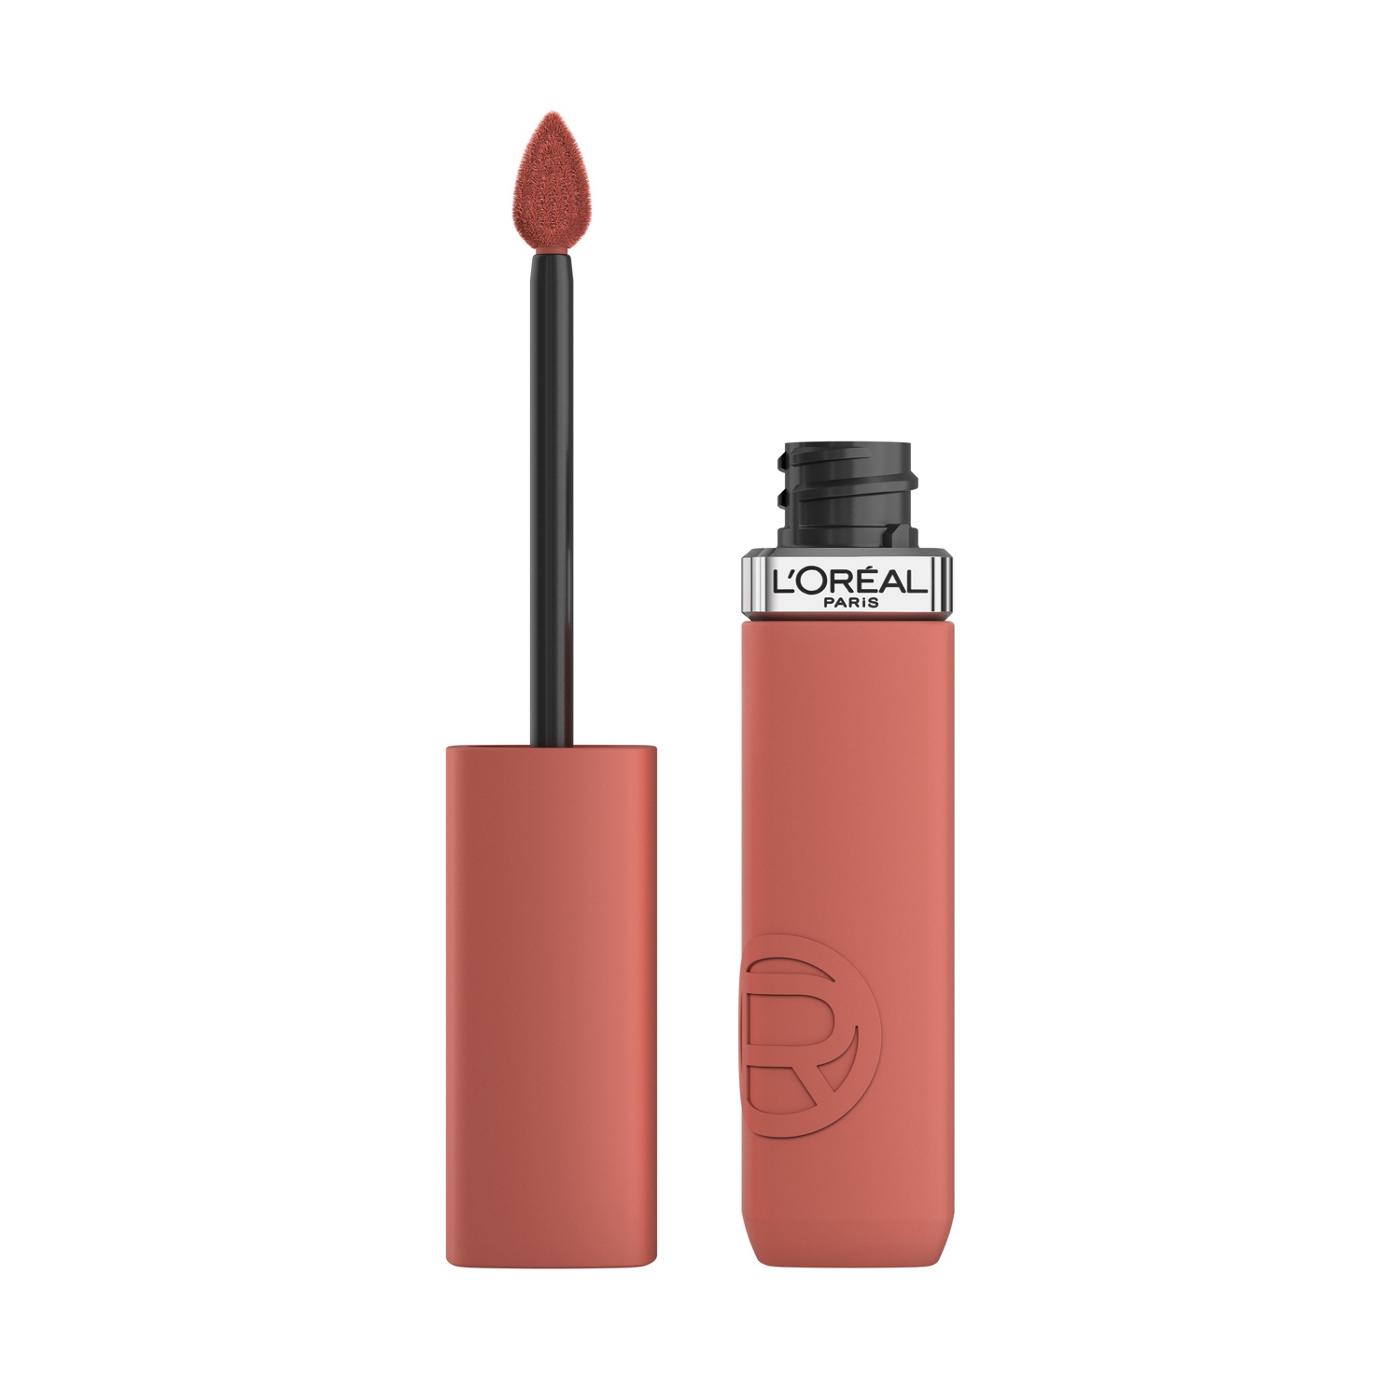 L'Oréal Paris Infallible Le Matte Resistance Liquid Lipstick - Rose Heat; image 1 of 6